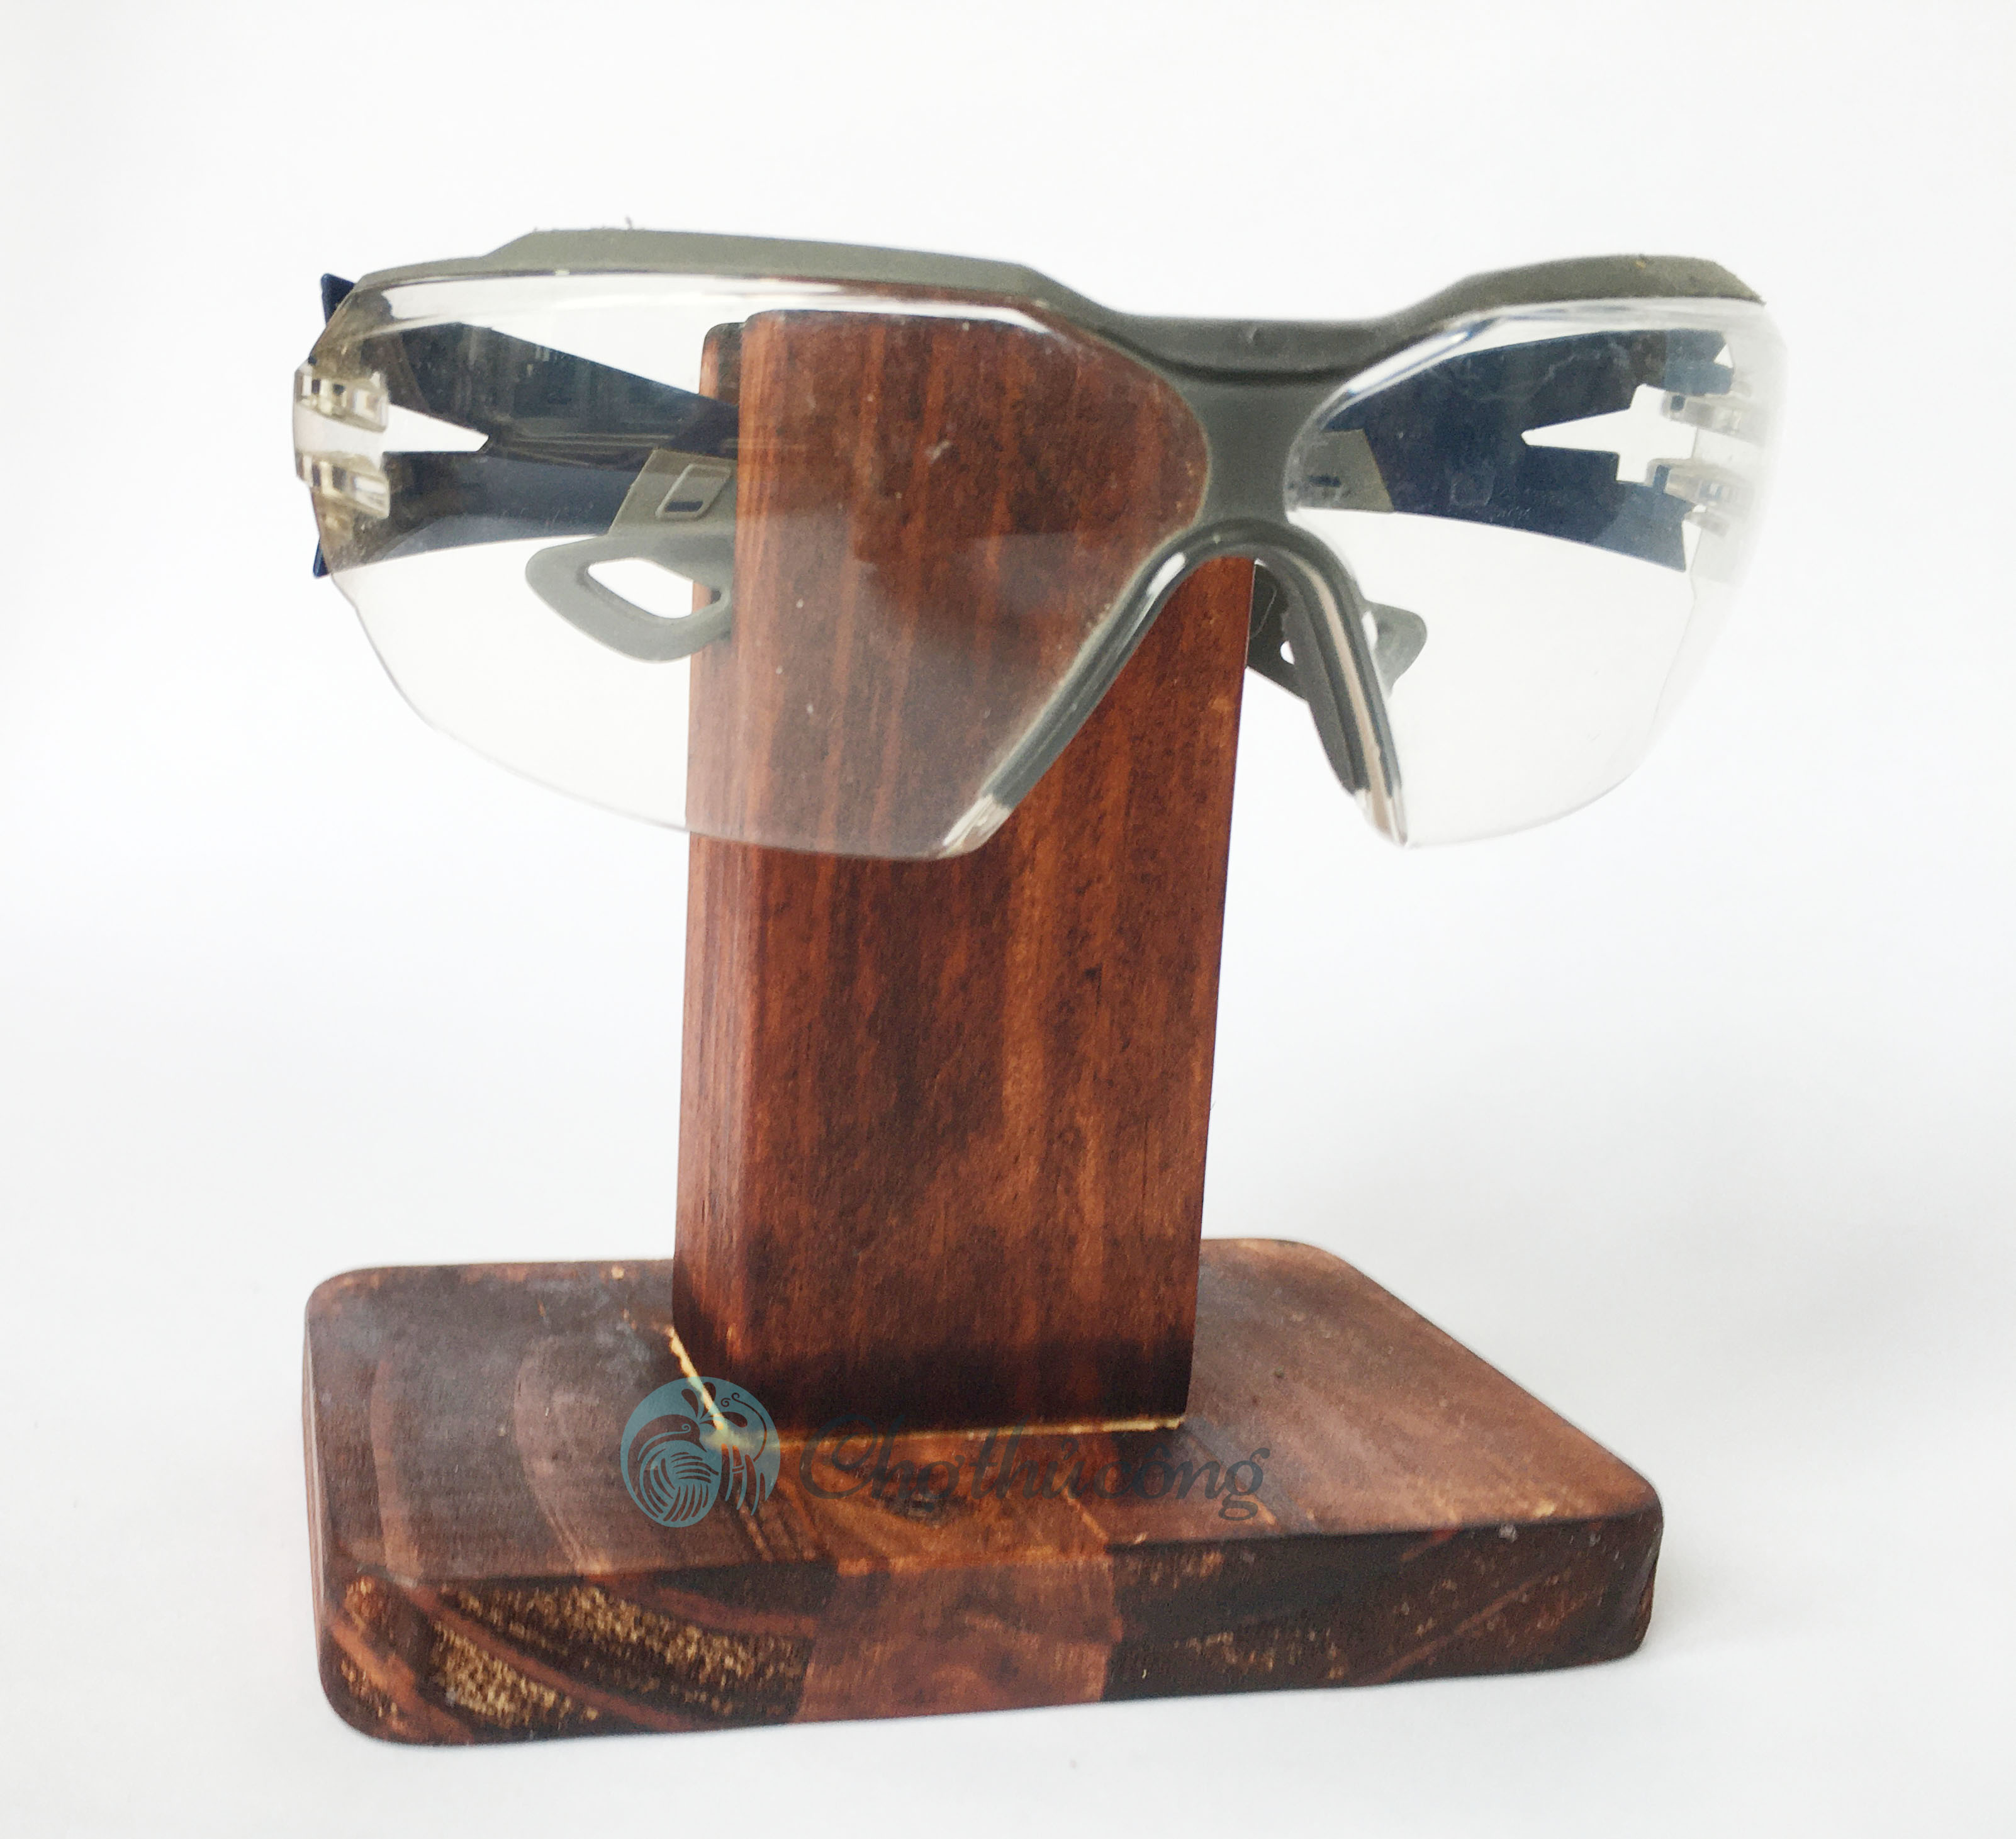 Kệ để mắt kính bằng gỗ thông tự nhiên, giá treo kính decor - kệ trưng mắt kính trang trí vintage, phụ kiện mắt kính cao cấp